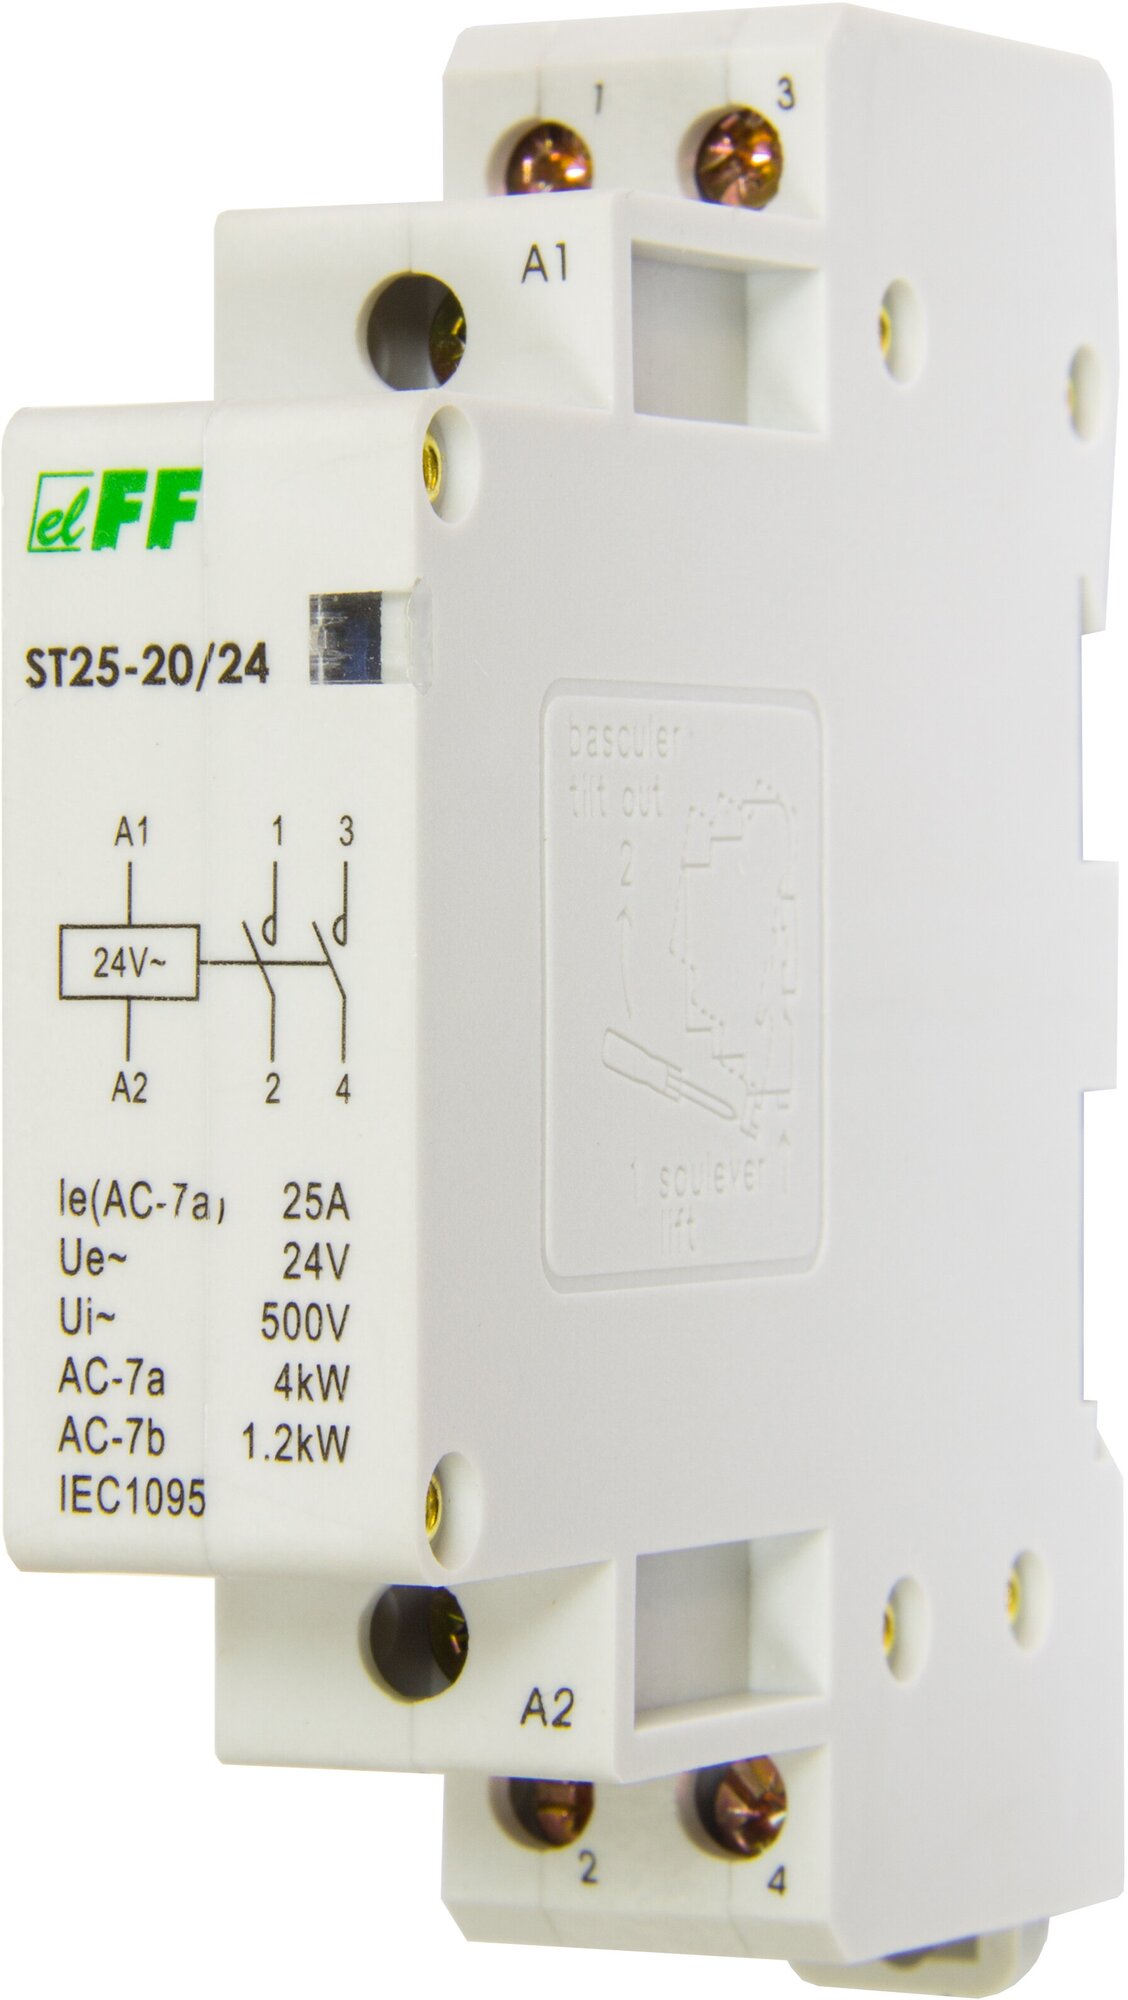 Контактор 25A 24VAC ST25-20 контакт 2NO, потребляемая мощность 2,2Вт, размер 1 модуль